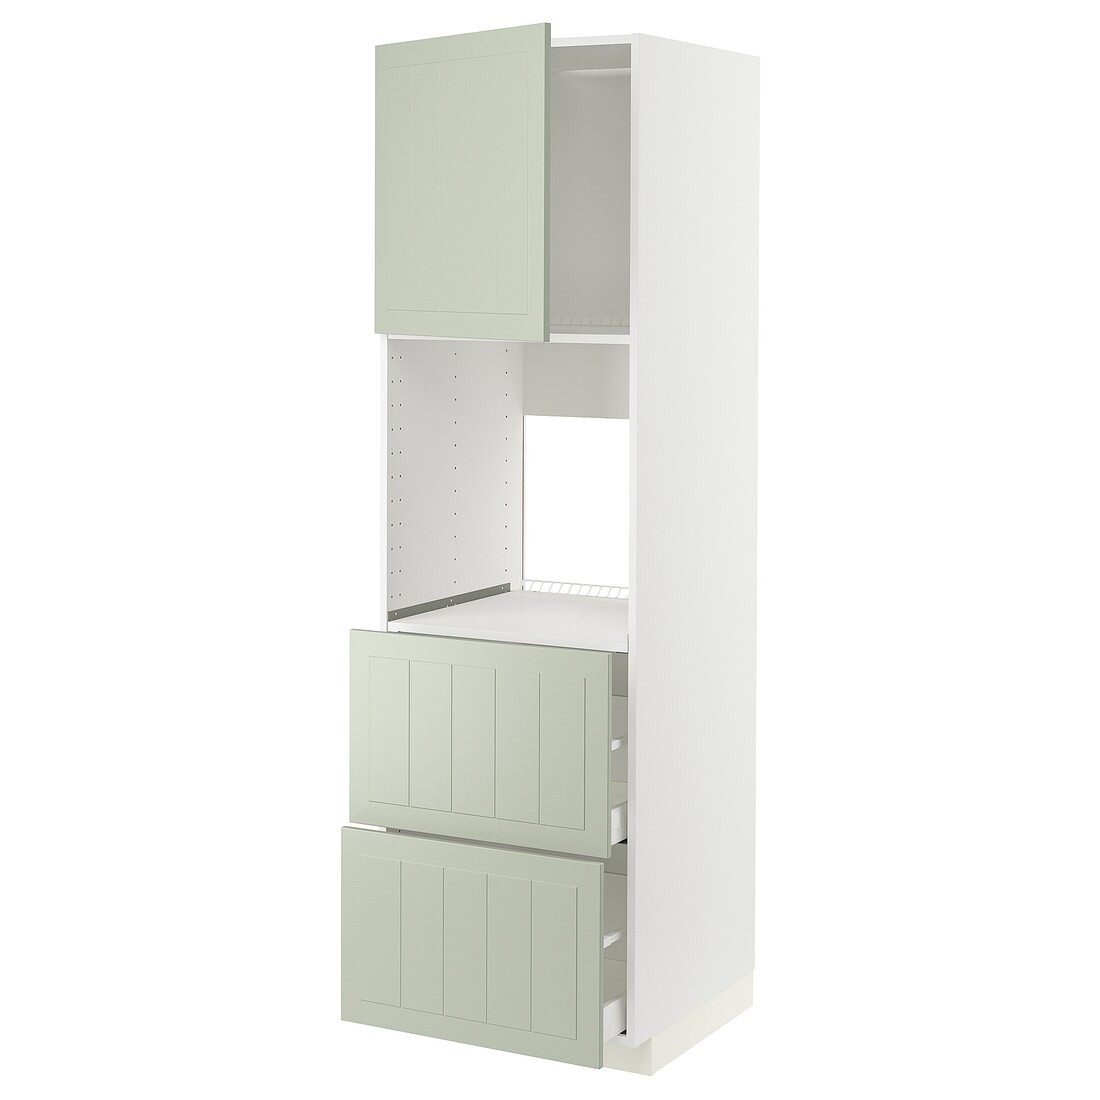 METOD МЕТОД / MAXIMERA МАКСИМЕРА Высокий шкаф для духовки с дверцей / ящиками, белый / Stensund светло-зеленый, 60x60x200 см